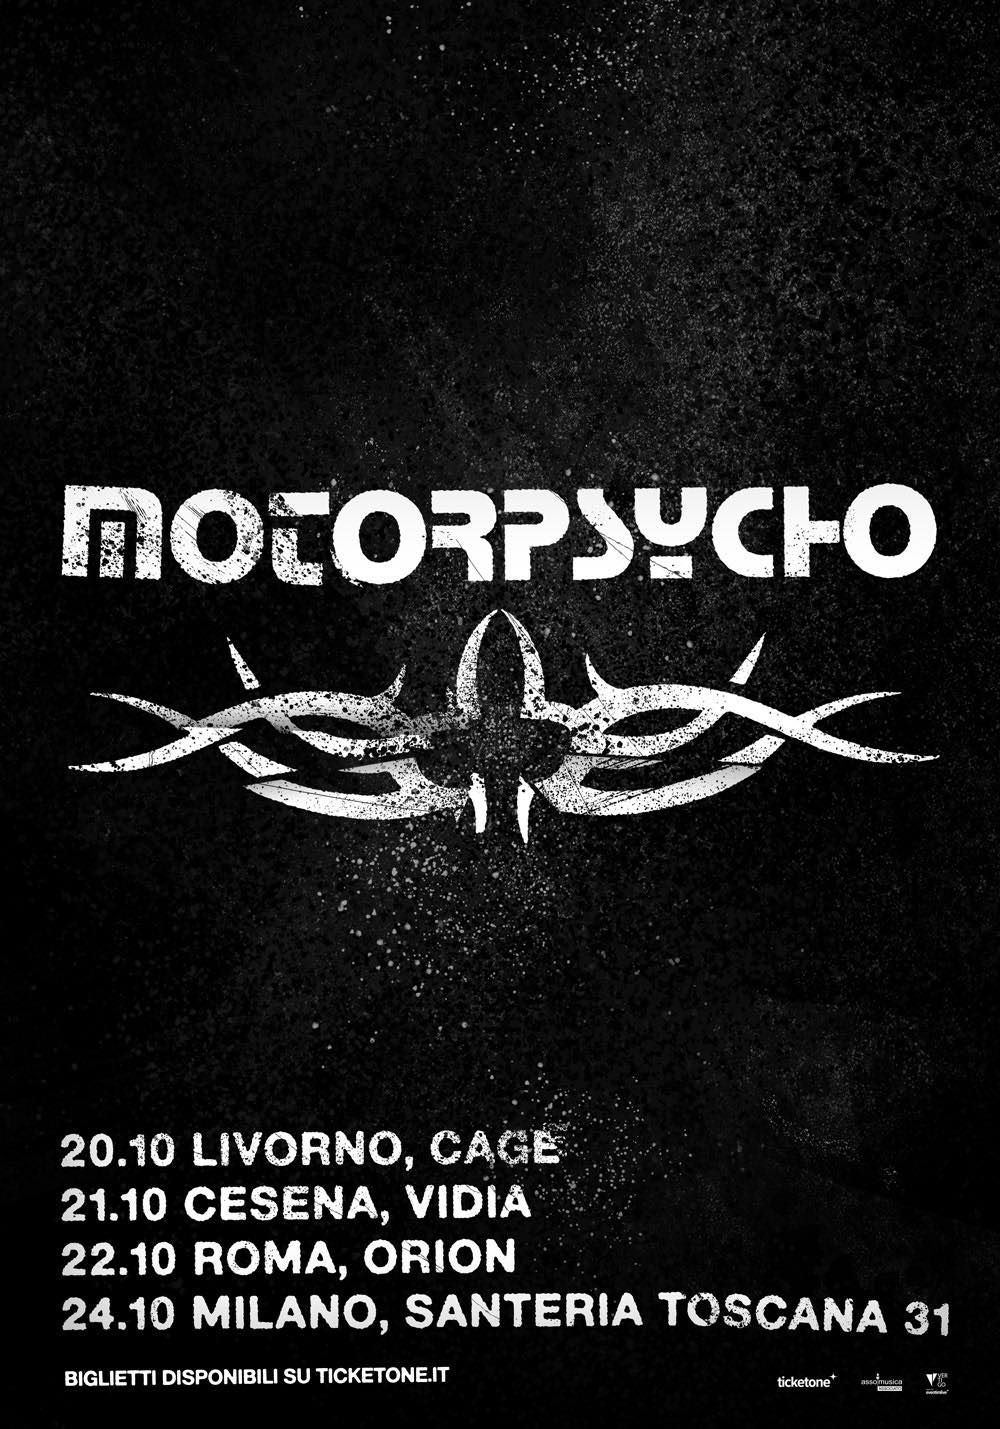 motorpsycho tour italia